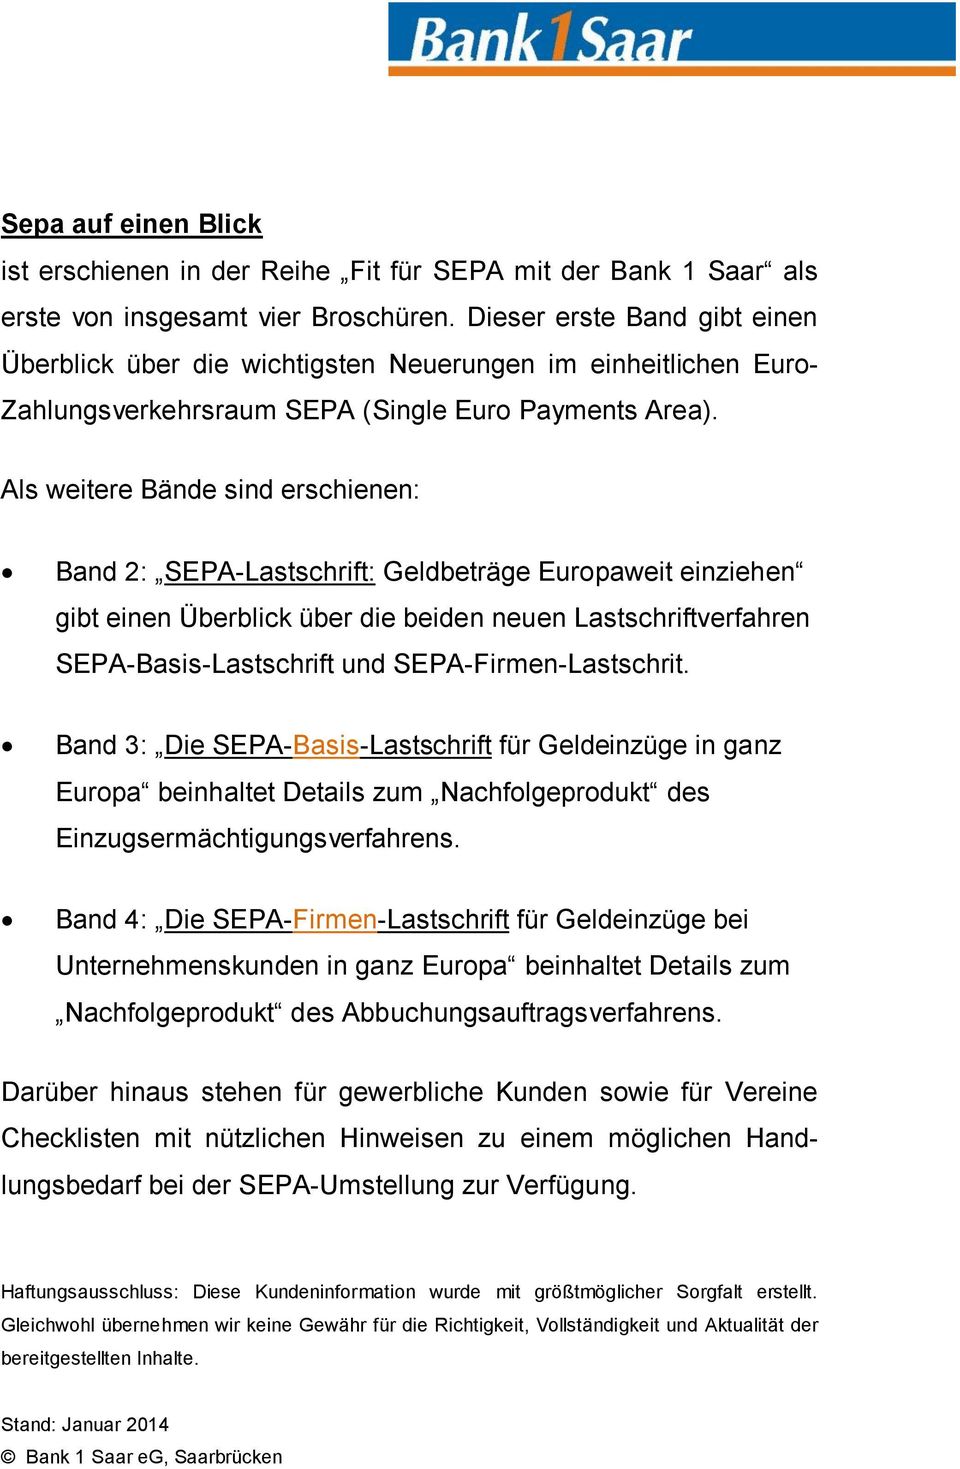 Als weitere Bände sind erschienen: Band 2: SEPA-Lastschrift: Geldbeträge Europaweit einziehen gibt einen Überblick über die beiden neuen Lastschriftverfahren SEPA-Basis-Lastschrift und